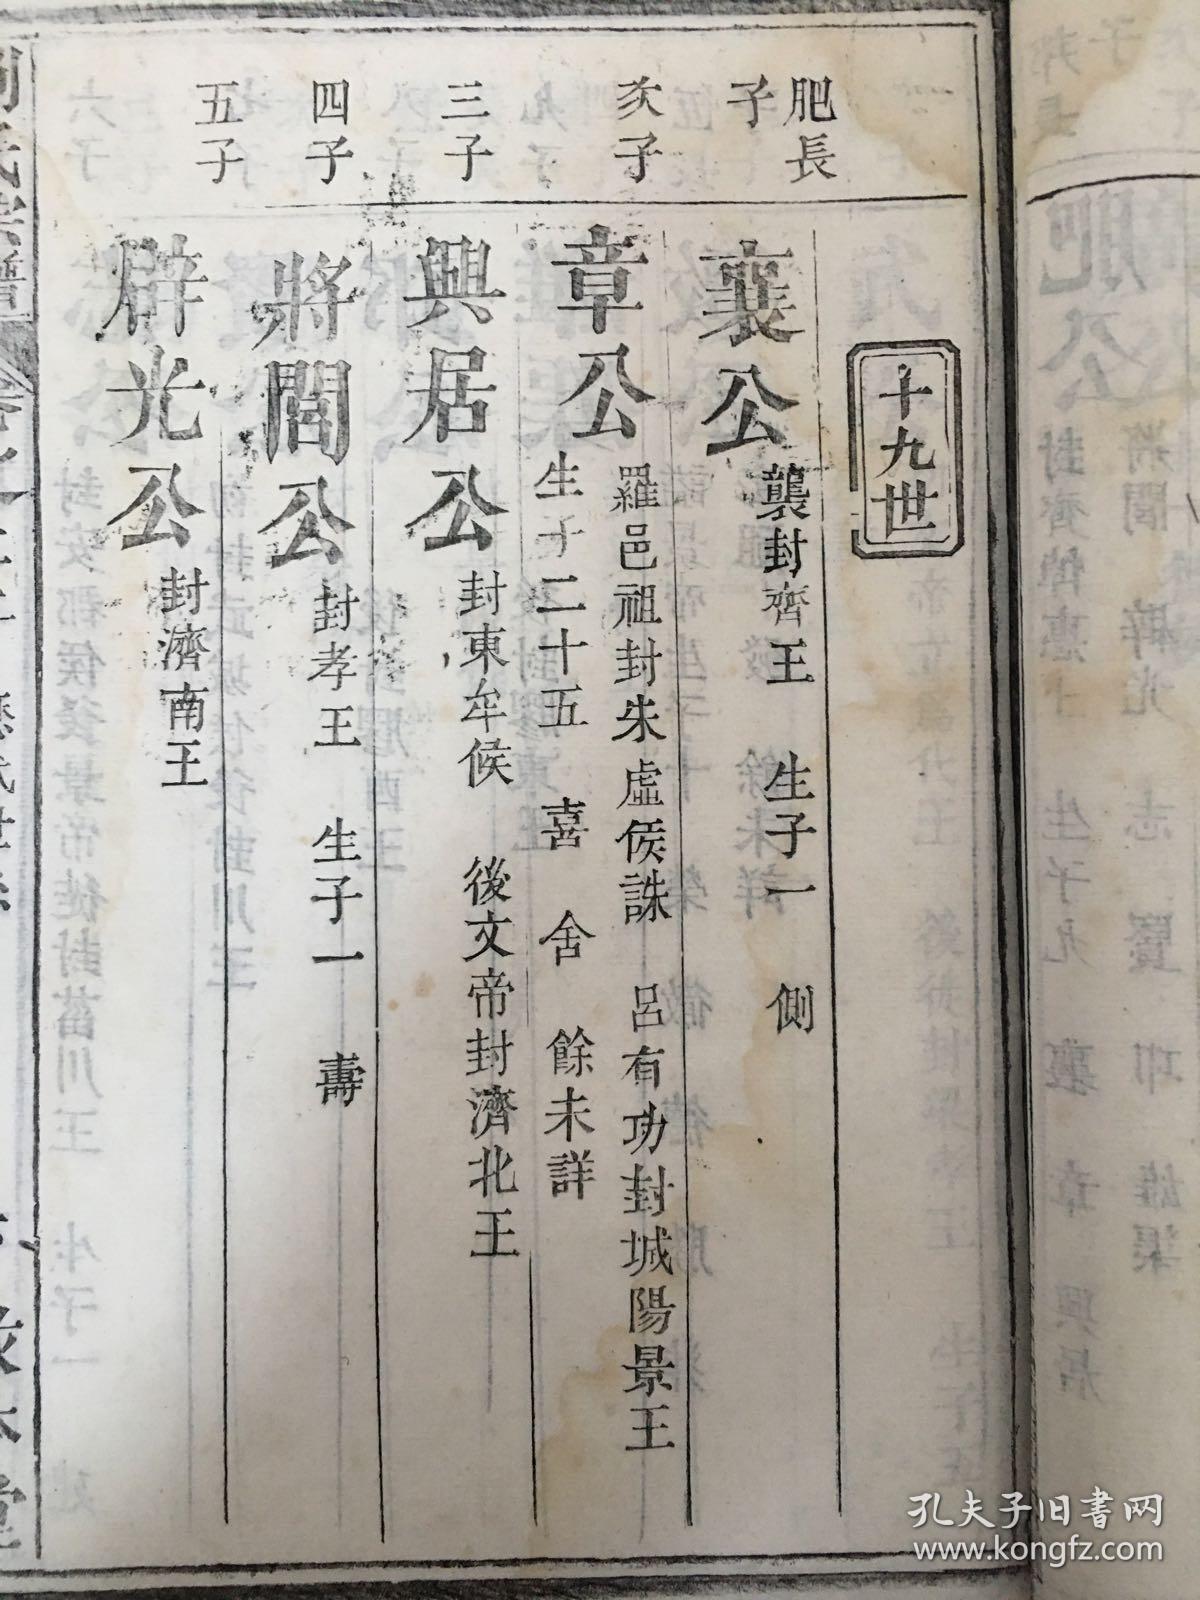 详细记载了刘邦及其子孙的世系,如:刘恒/刘肥/刘彻/刘巨容等,大量的